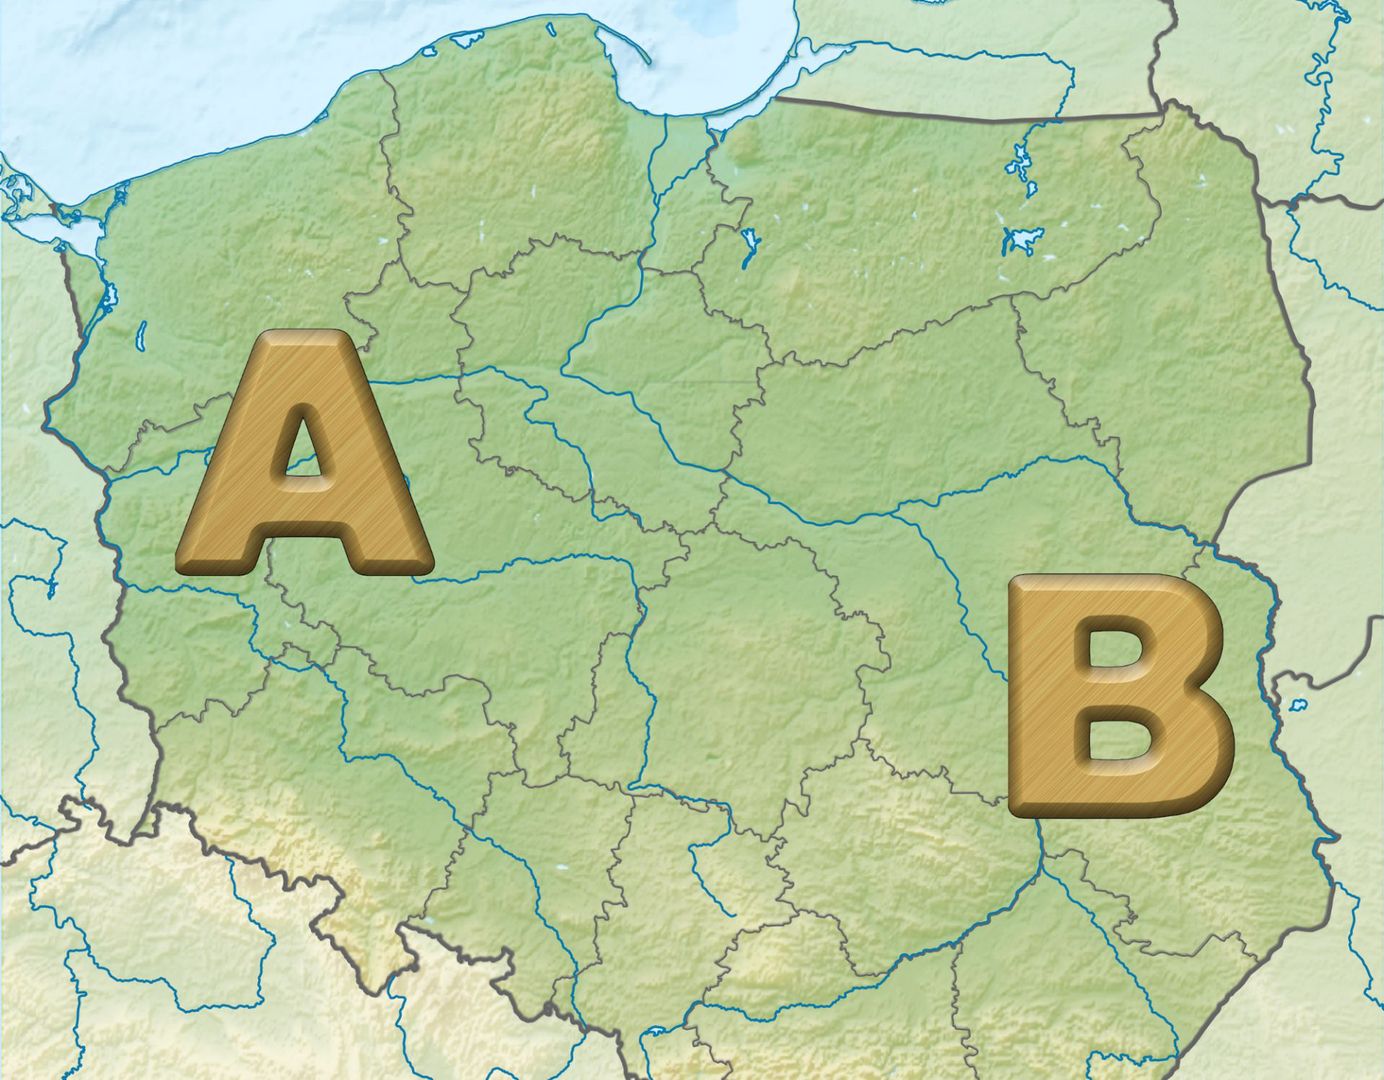 Zmieniła się granica pomiędzy Polską A i Polską B